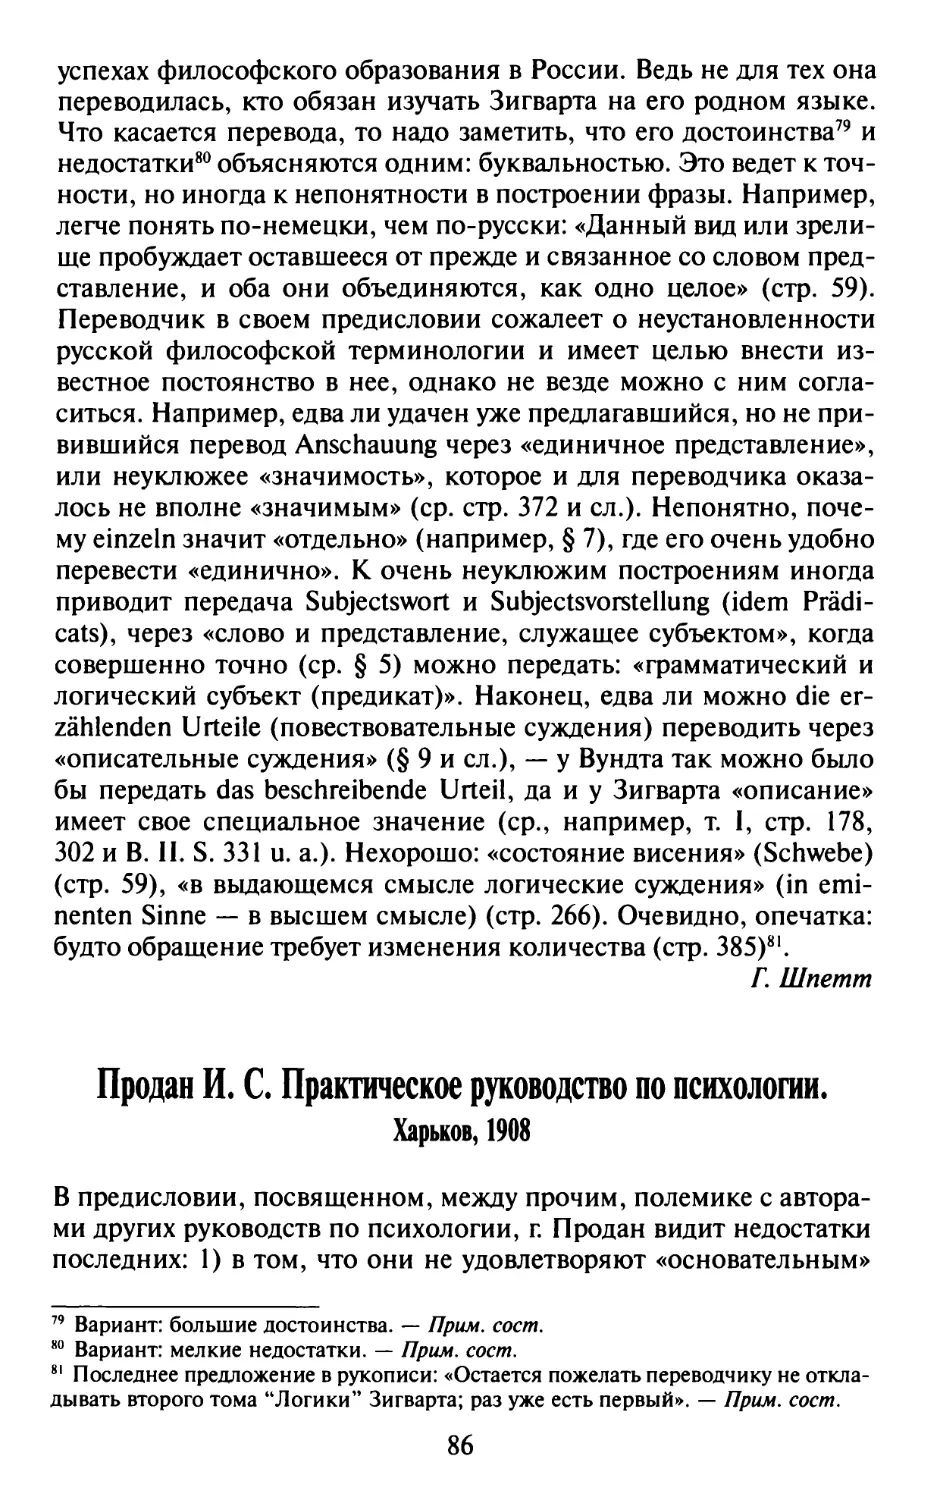 Продан И.С. Практическое руководство по психологии. Харьков, 1908